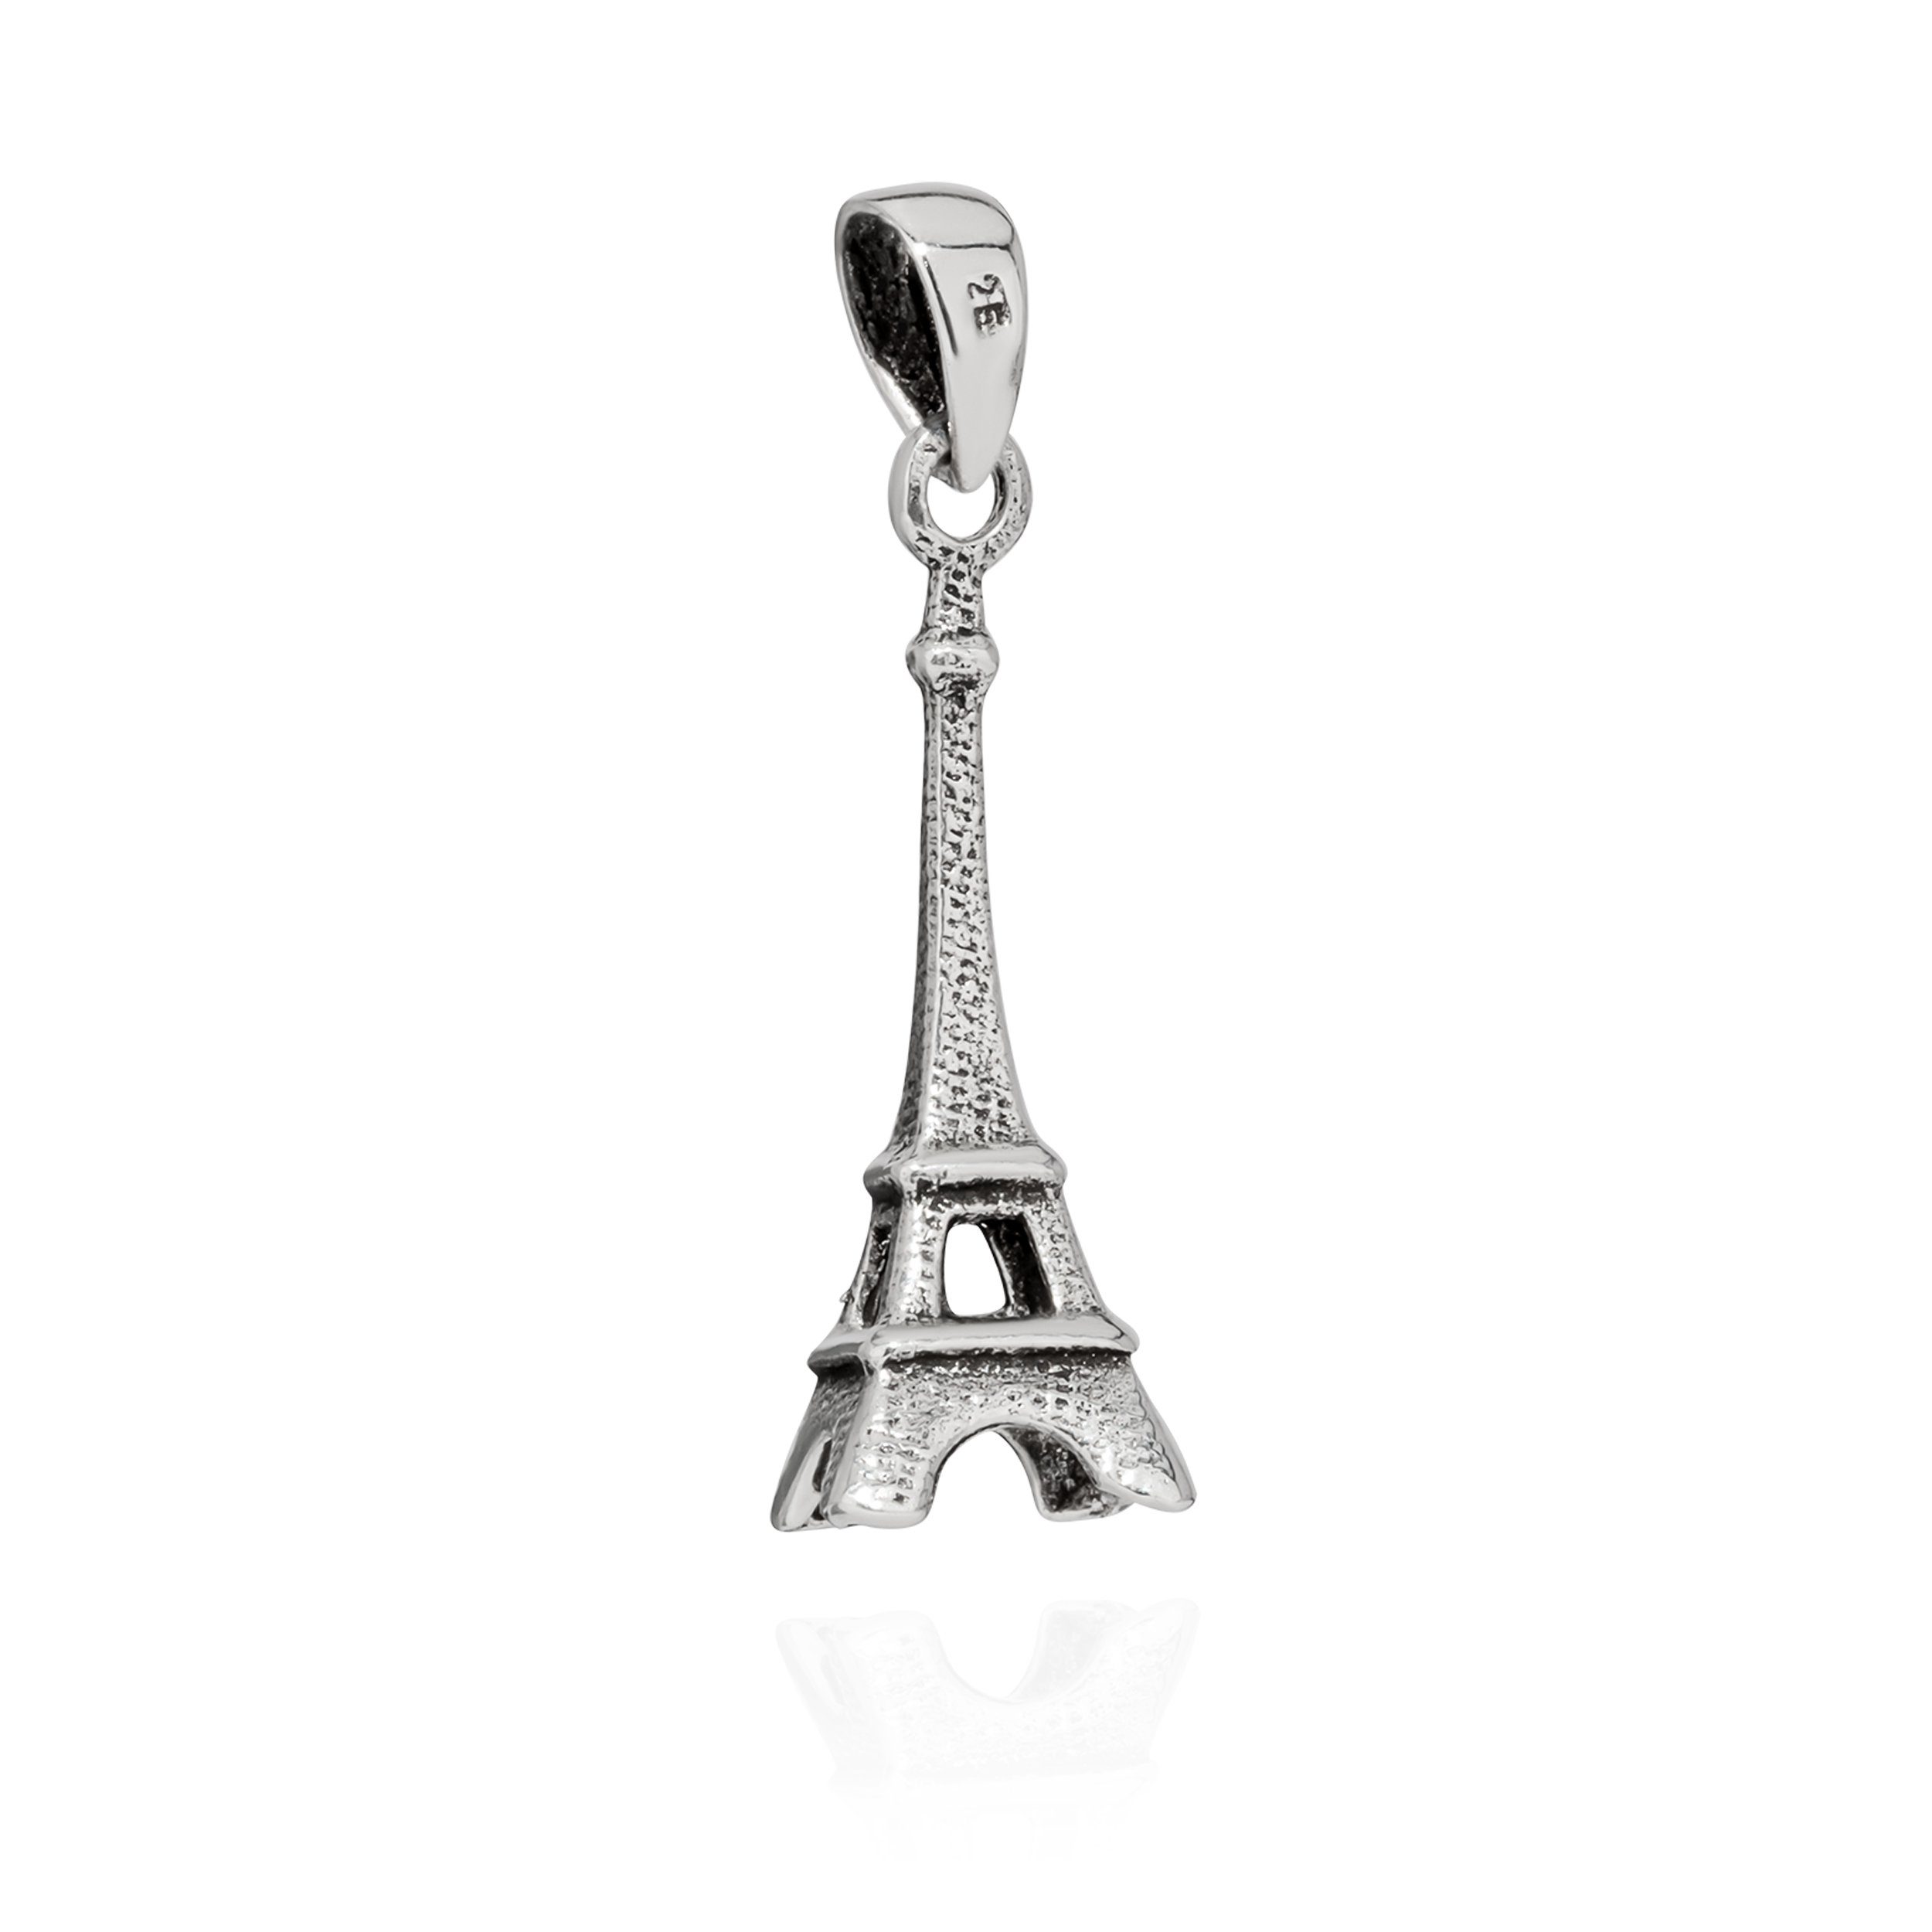 NKlaus Kettenanhänger Kettenanhänger Eiffelturm 925 Silber 23x8mm Paris, 925 Silber rhodiniert